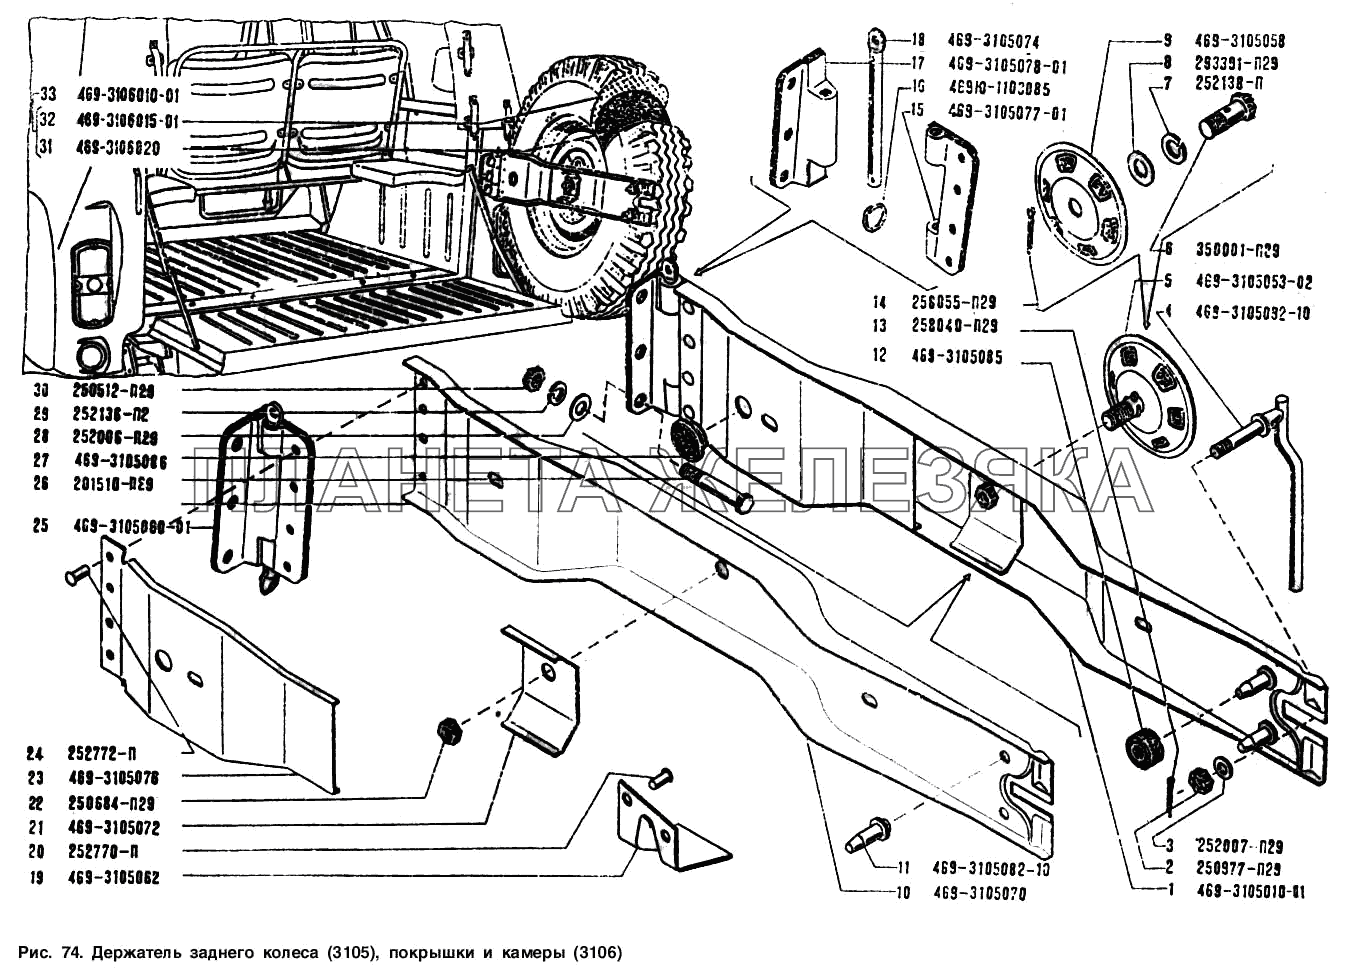 Держатель запасного колеса, покрышки и камеры УАЗ-3151